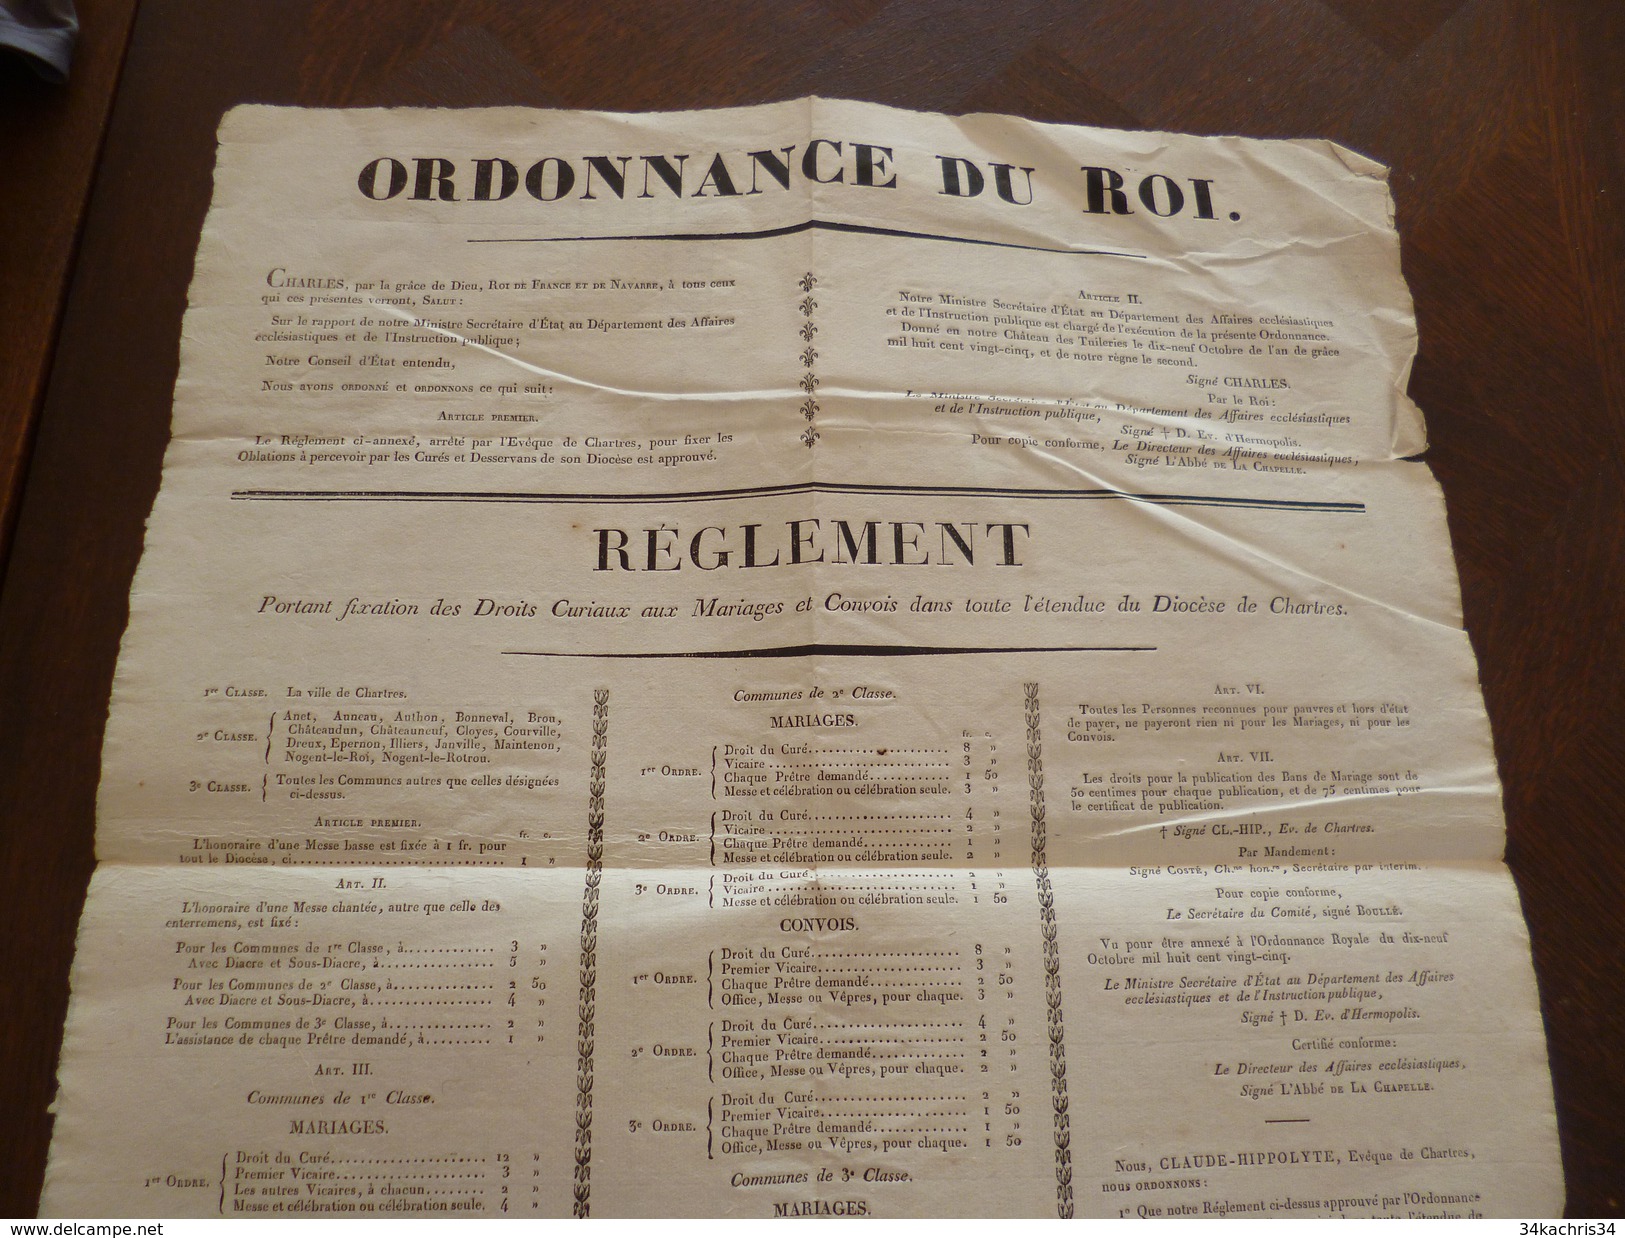 Affiche Placard Ordonnance Du Roi Chartres Fixation Des Droits Curiaux De Mariage Et Convois 22/01/1826  2X A3 - Décrets & Lois